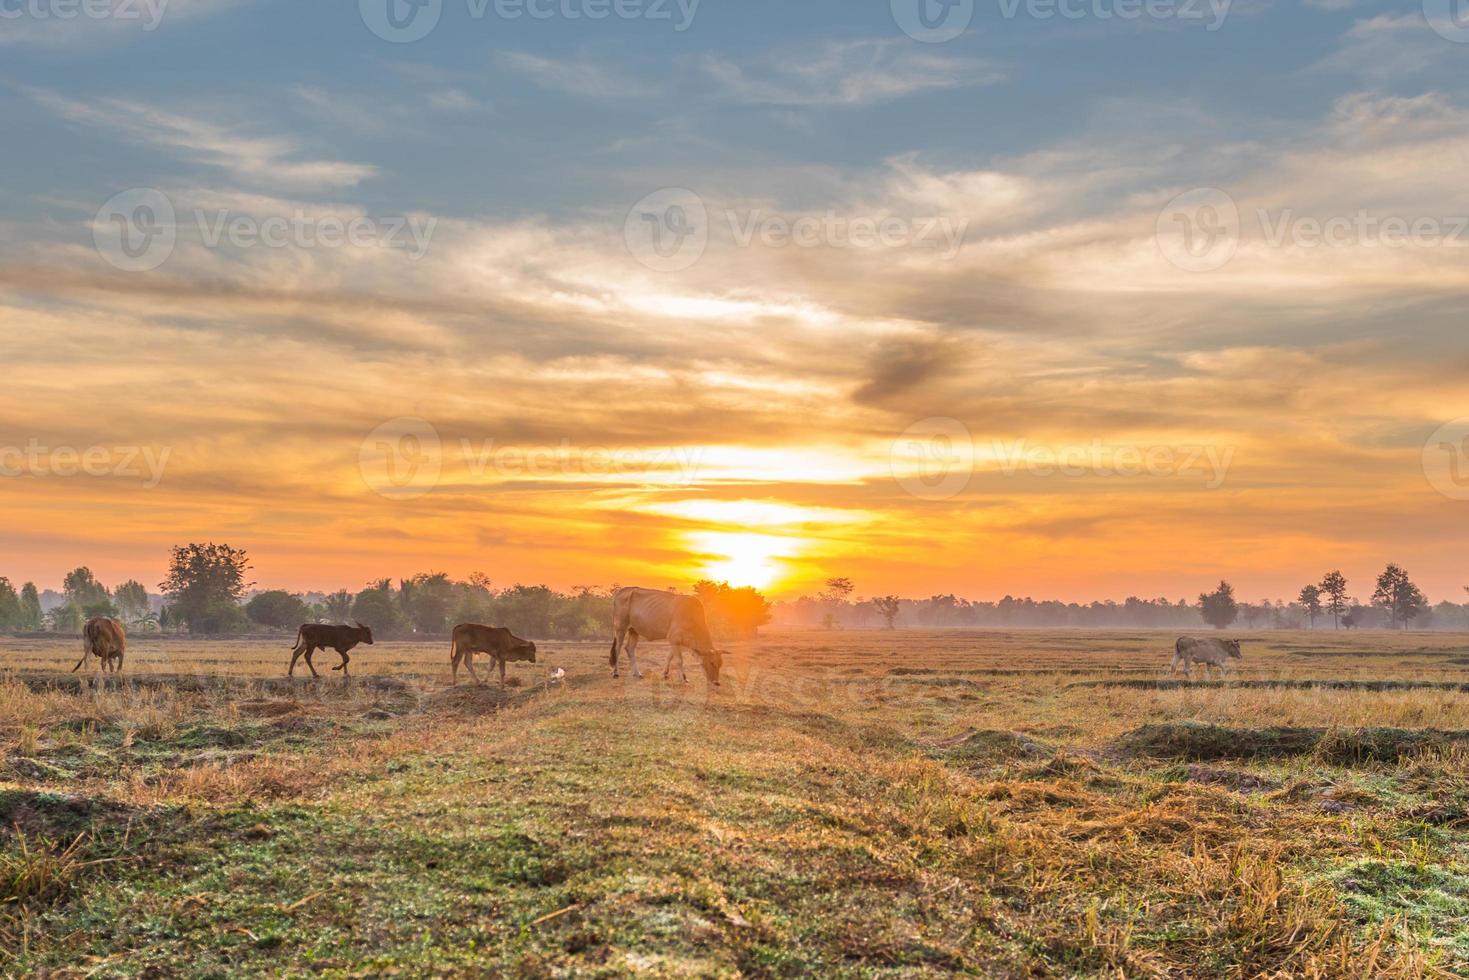 die kühe fressen gras zum vergnügen auf den feldern bei sonnenaufgang und dem schönen himmel. foto